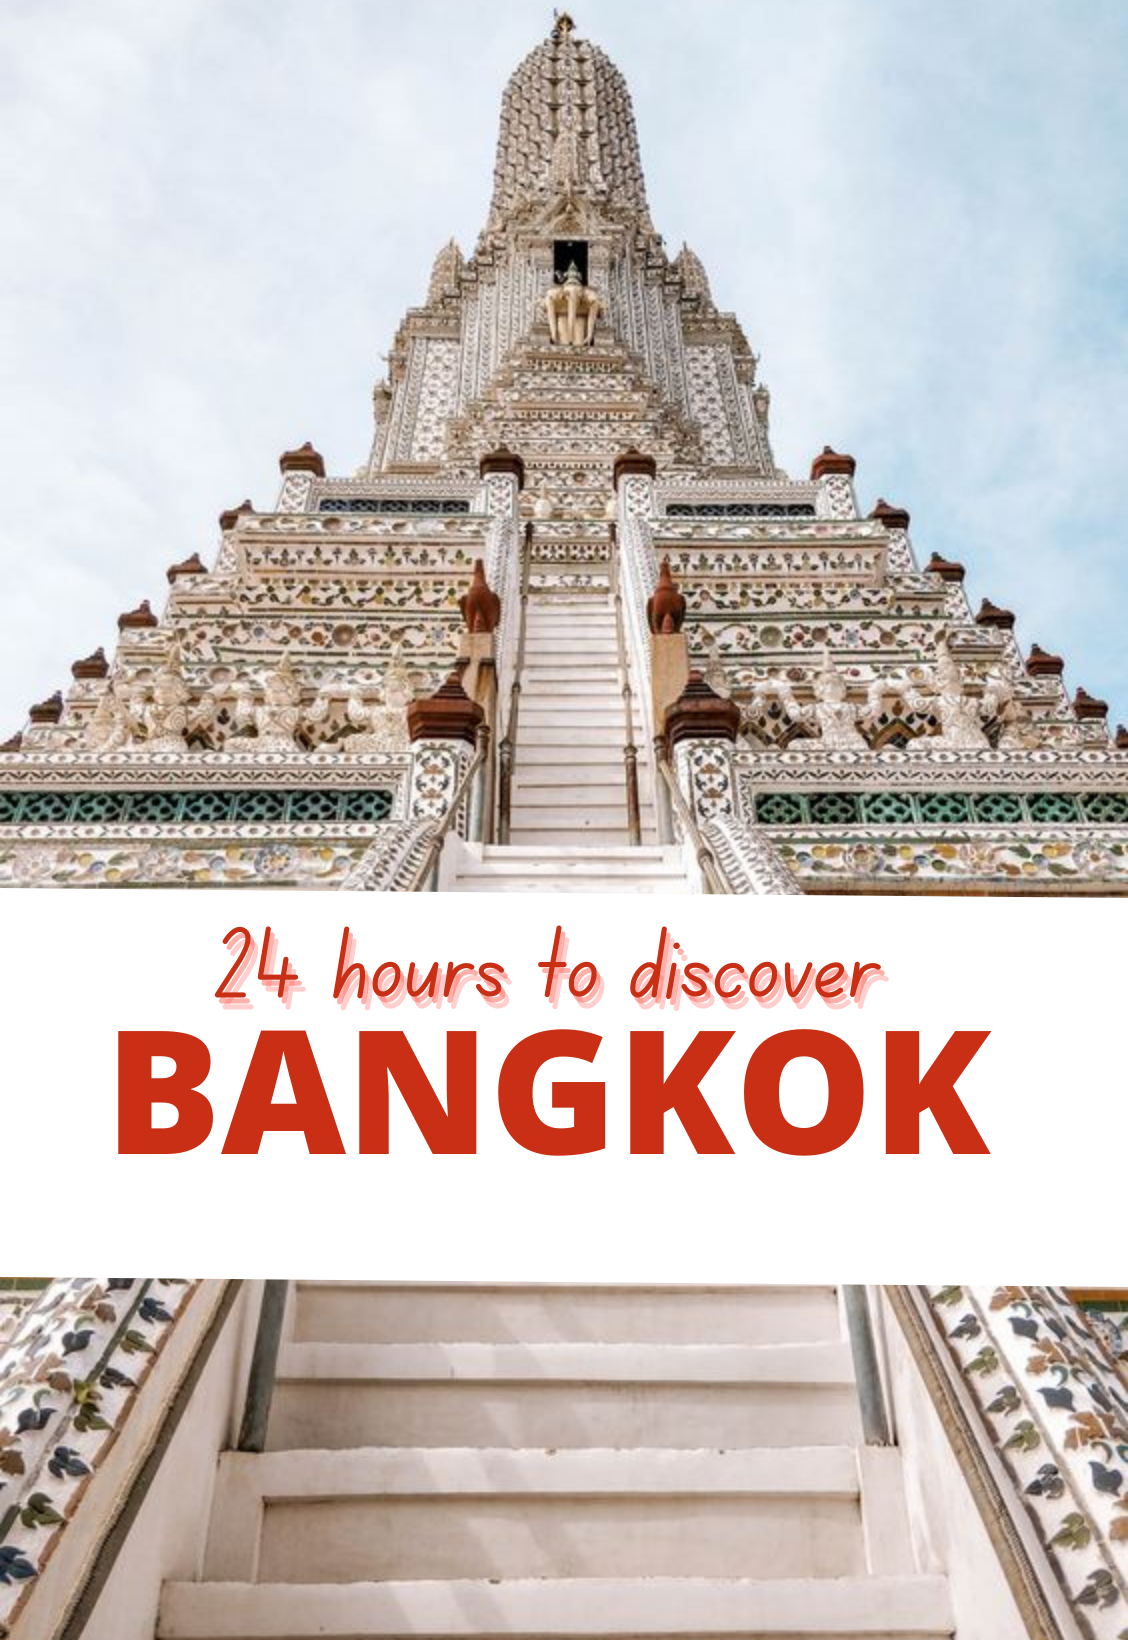 24 hours to discover BangKok